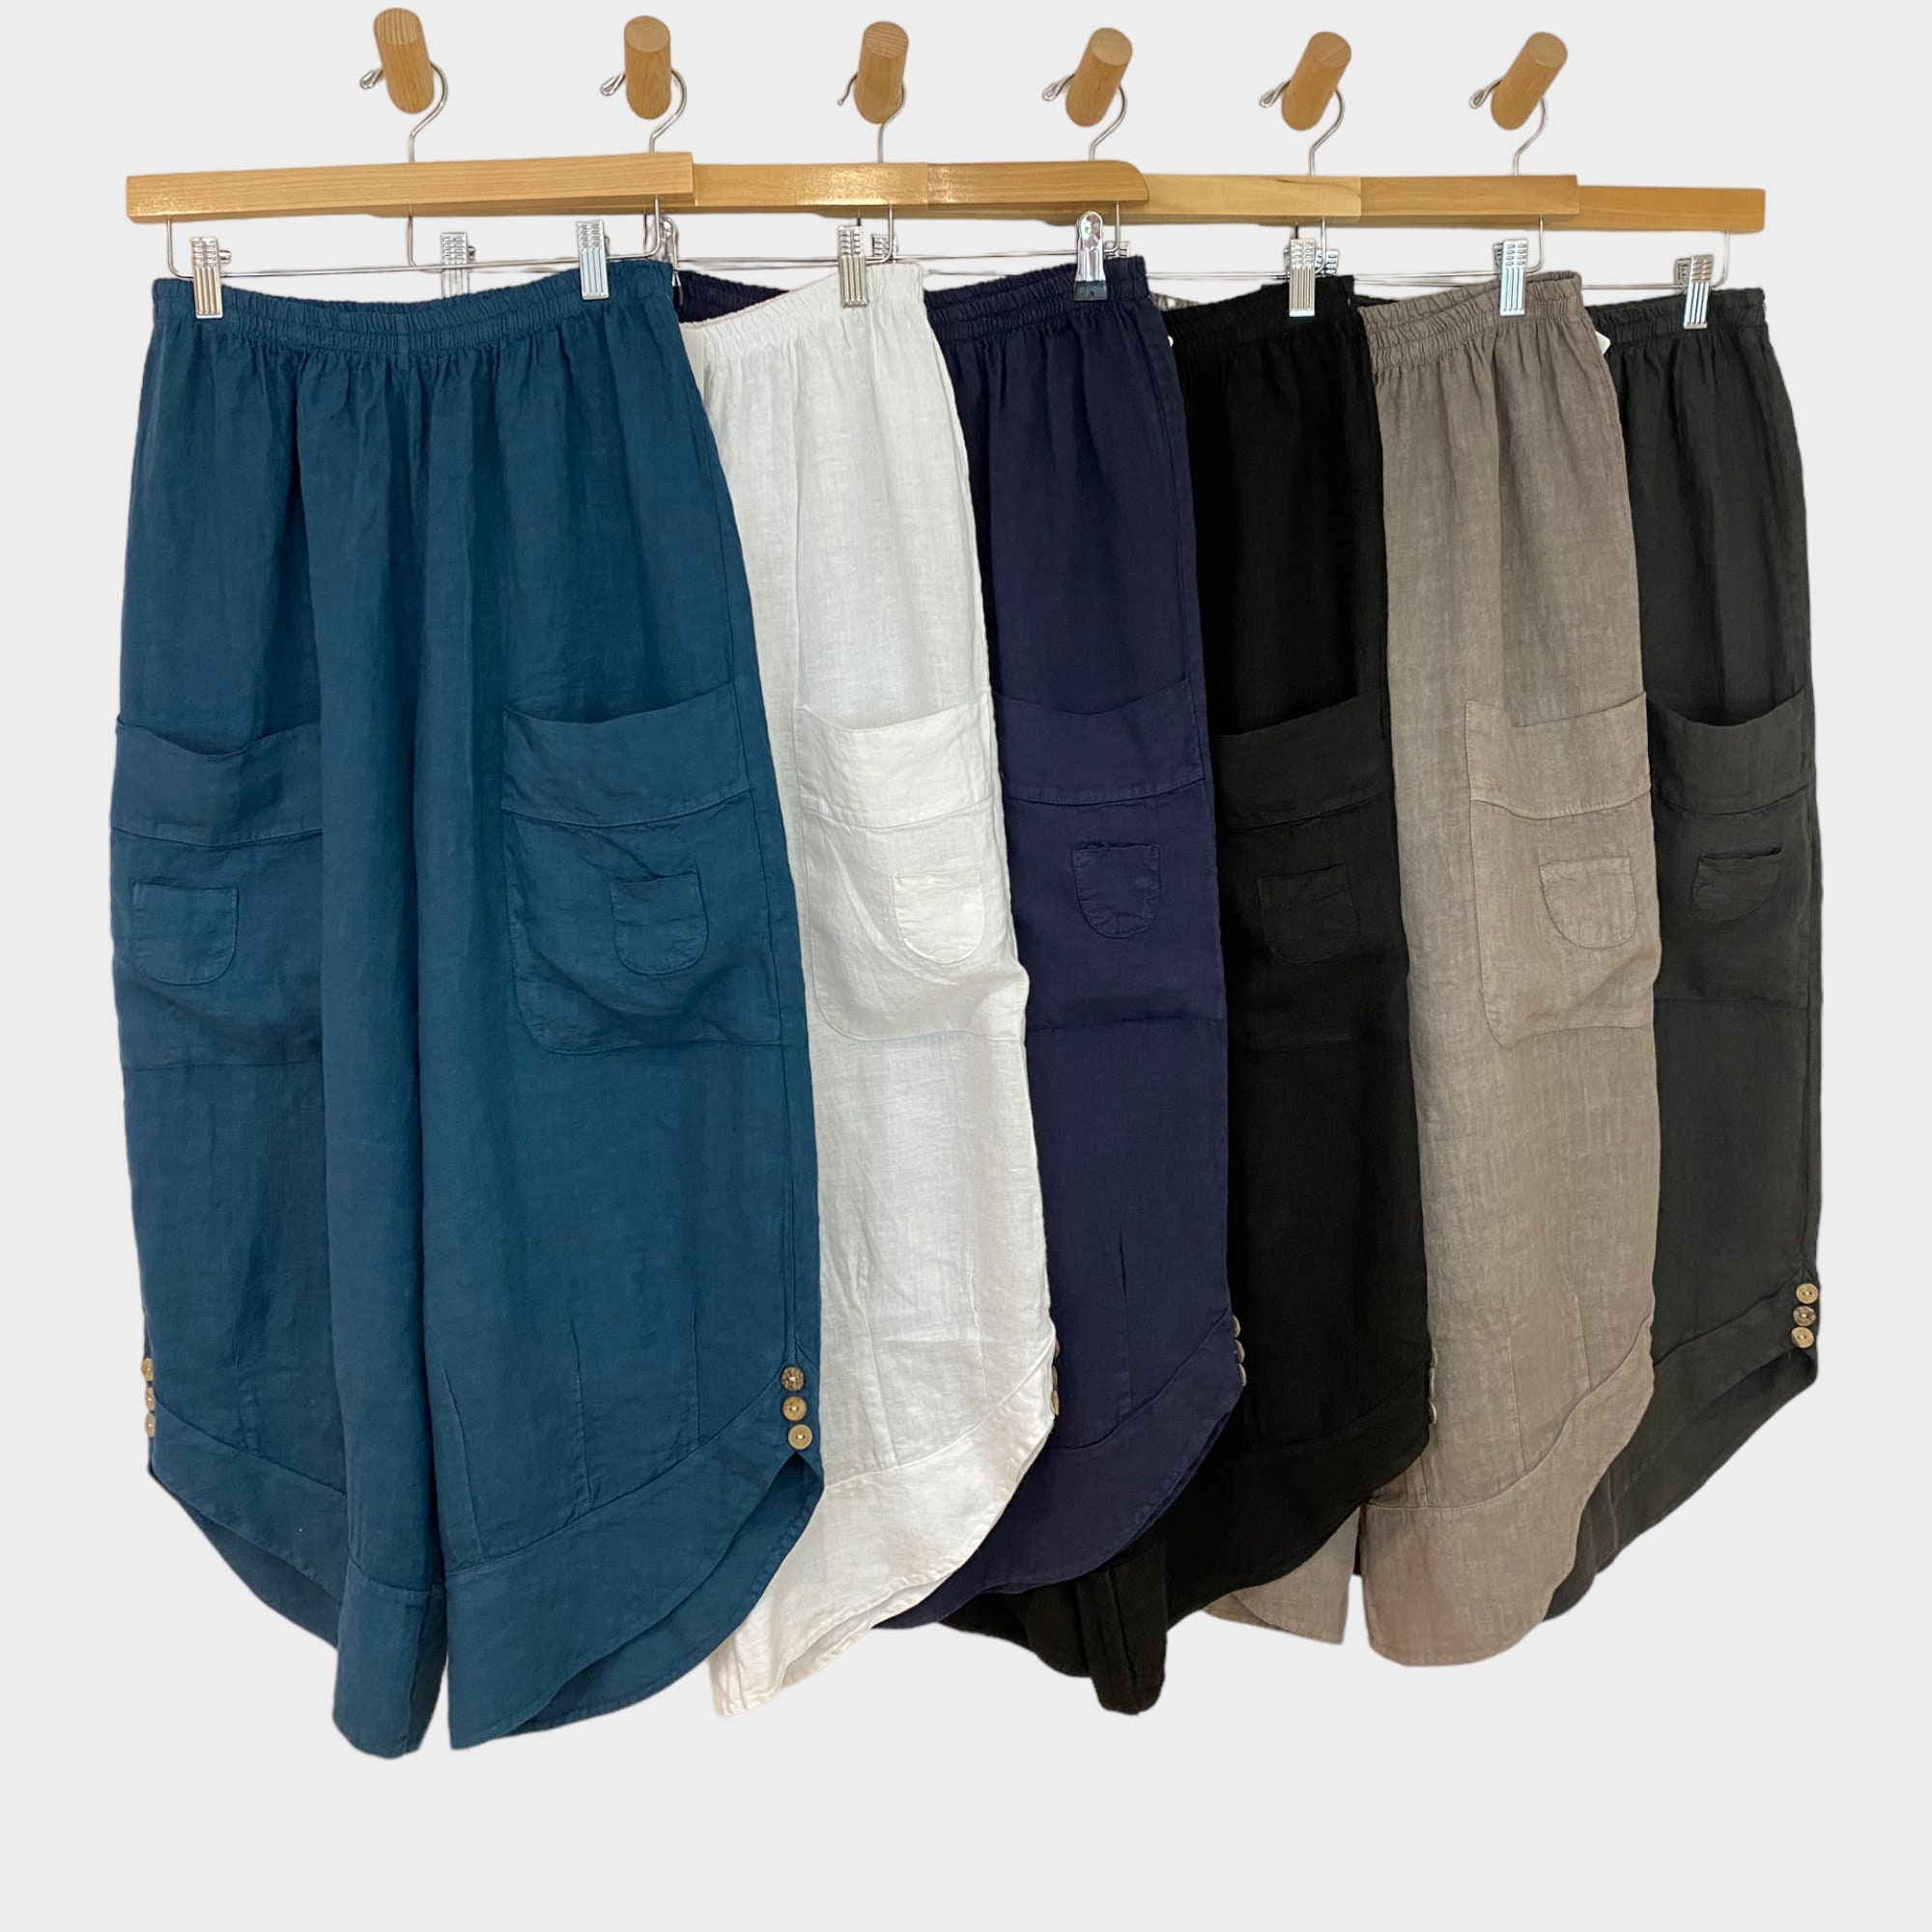 Linen Pants RILEY, Linen Crop Pants, Summer Linen Pants, Relaxed